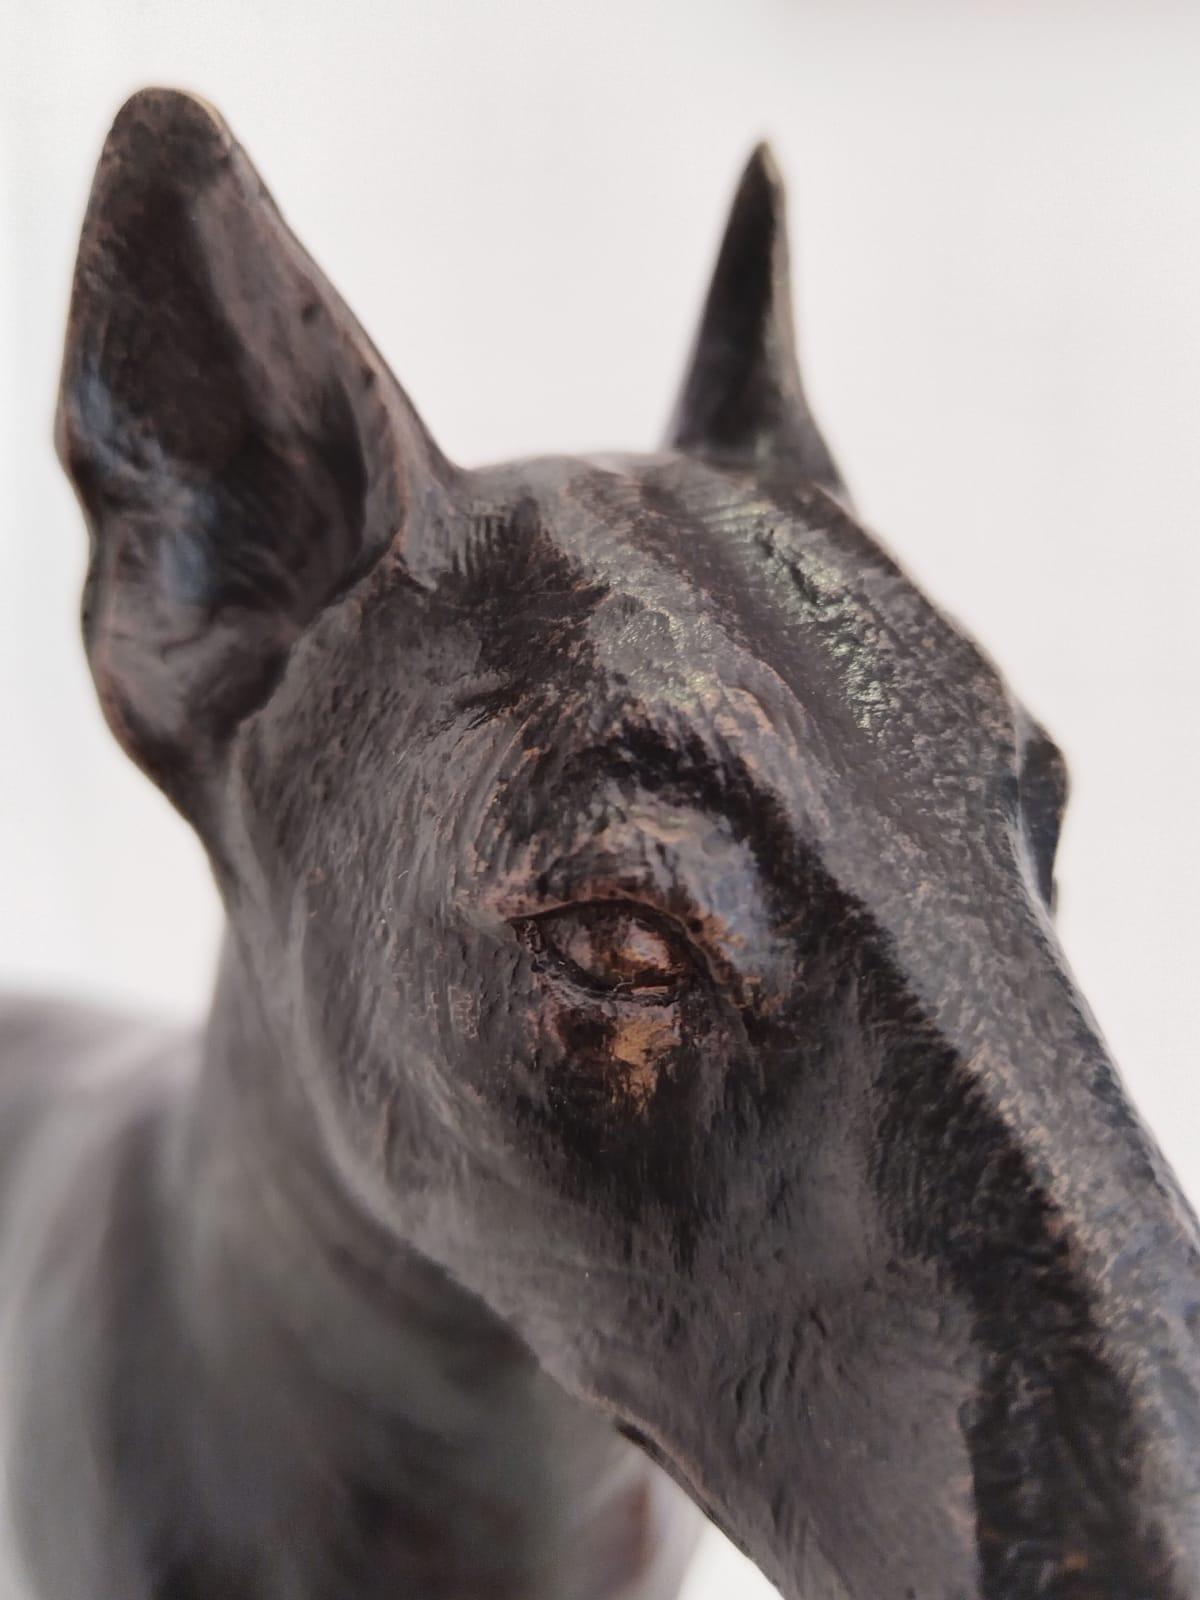 Une petite sculpture en bronze de Bull Terrier en édition limitée. Édition 2 de 12.
LIVRAISON GRATUITE